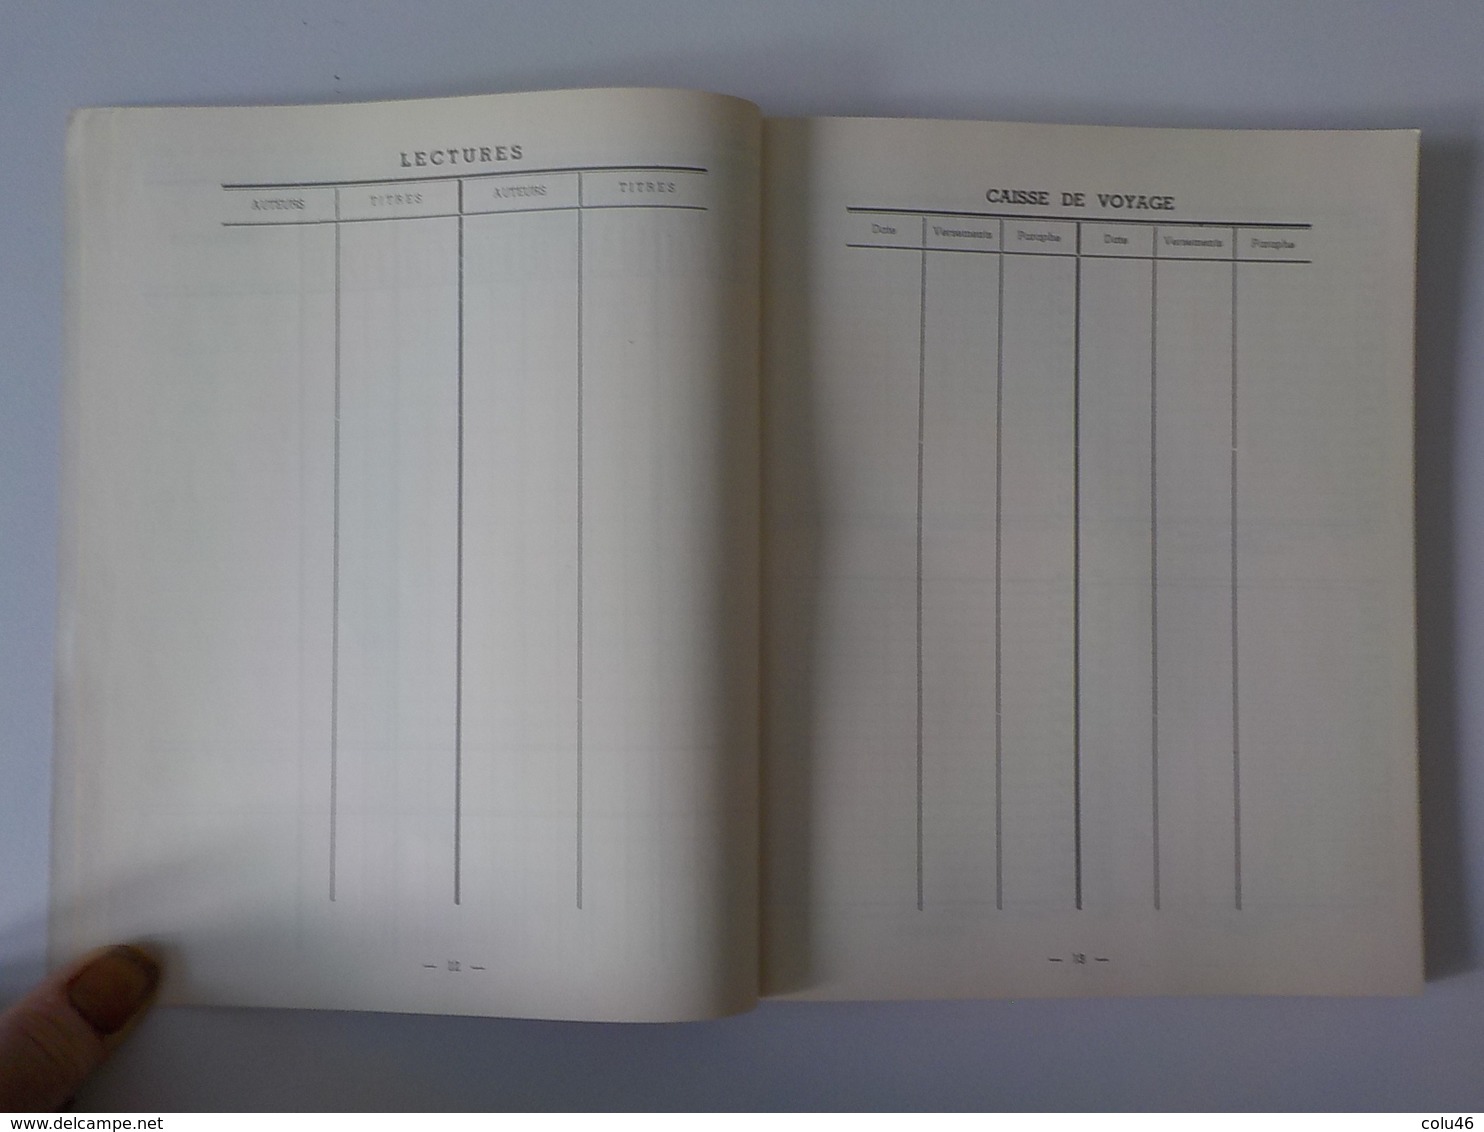 1950 Athénée Royal de Saint-Gilles Journal de Classe vierge école fourniture scolaire cahier élève